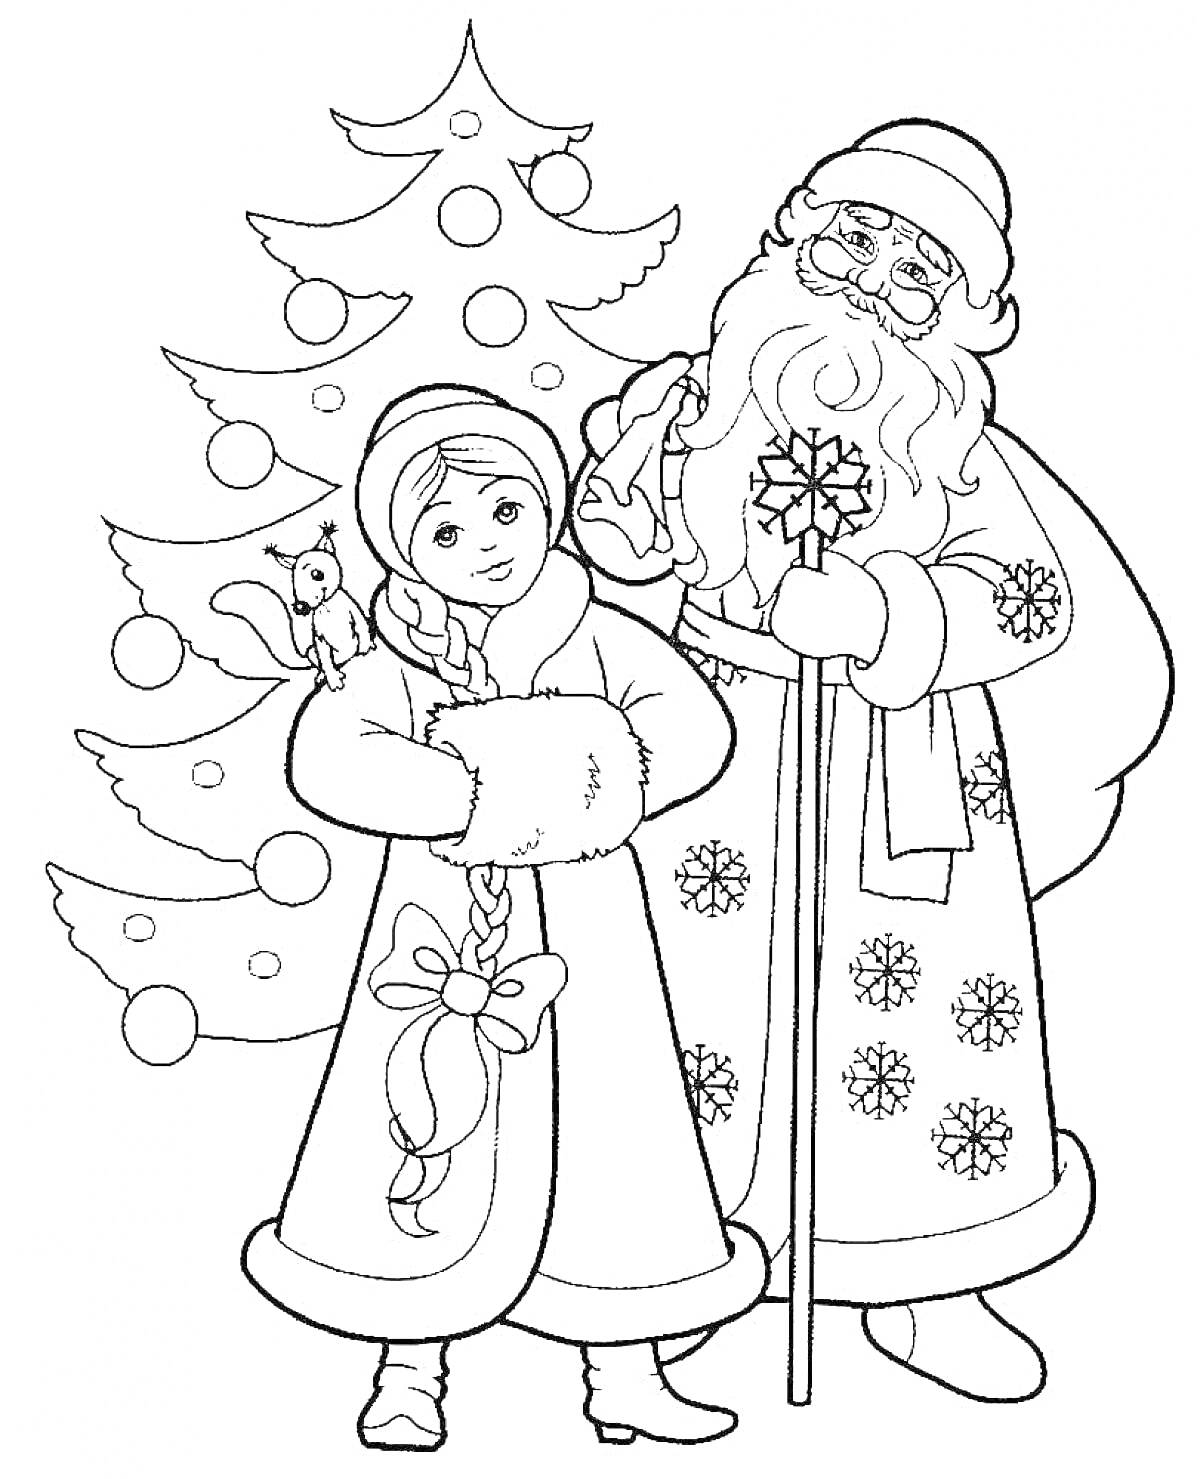 Раскраска Дед Мороз и Снегурочка рядом с наряженной ёлкой, у Снегурочки на руке сидит белка